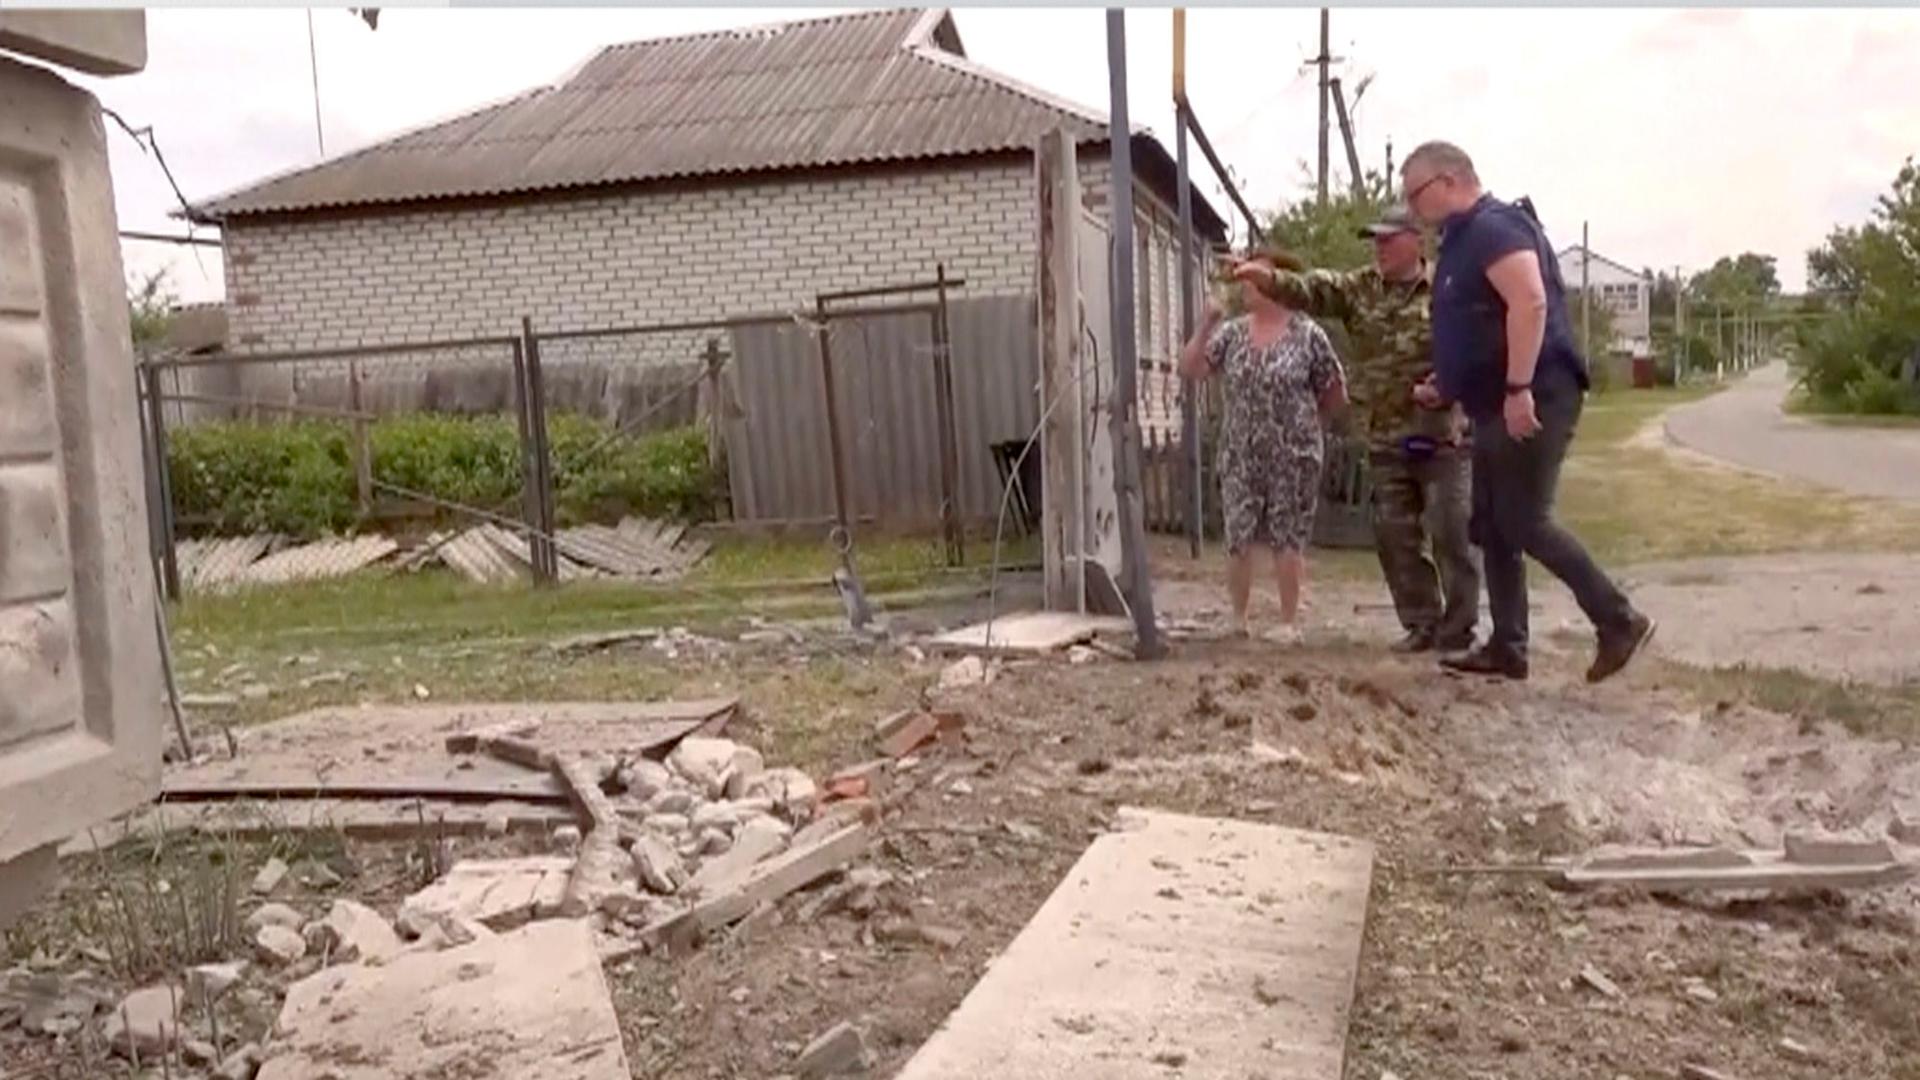 Russland, Belgorod: Personen begutachten ein zerstörtes Haus.